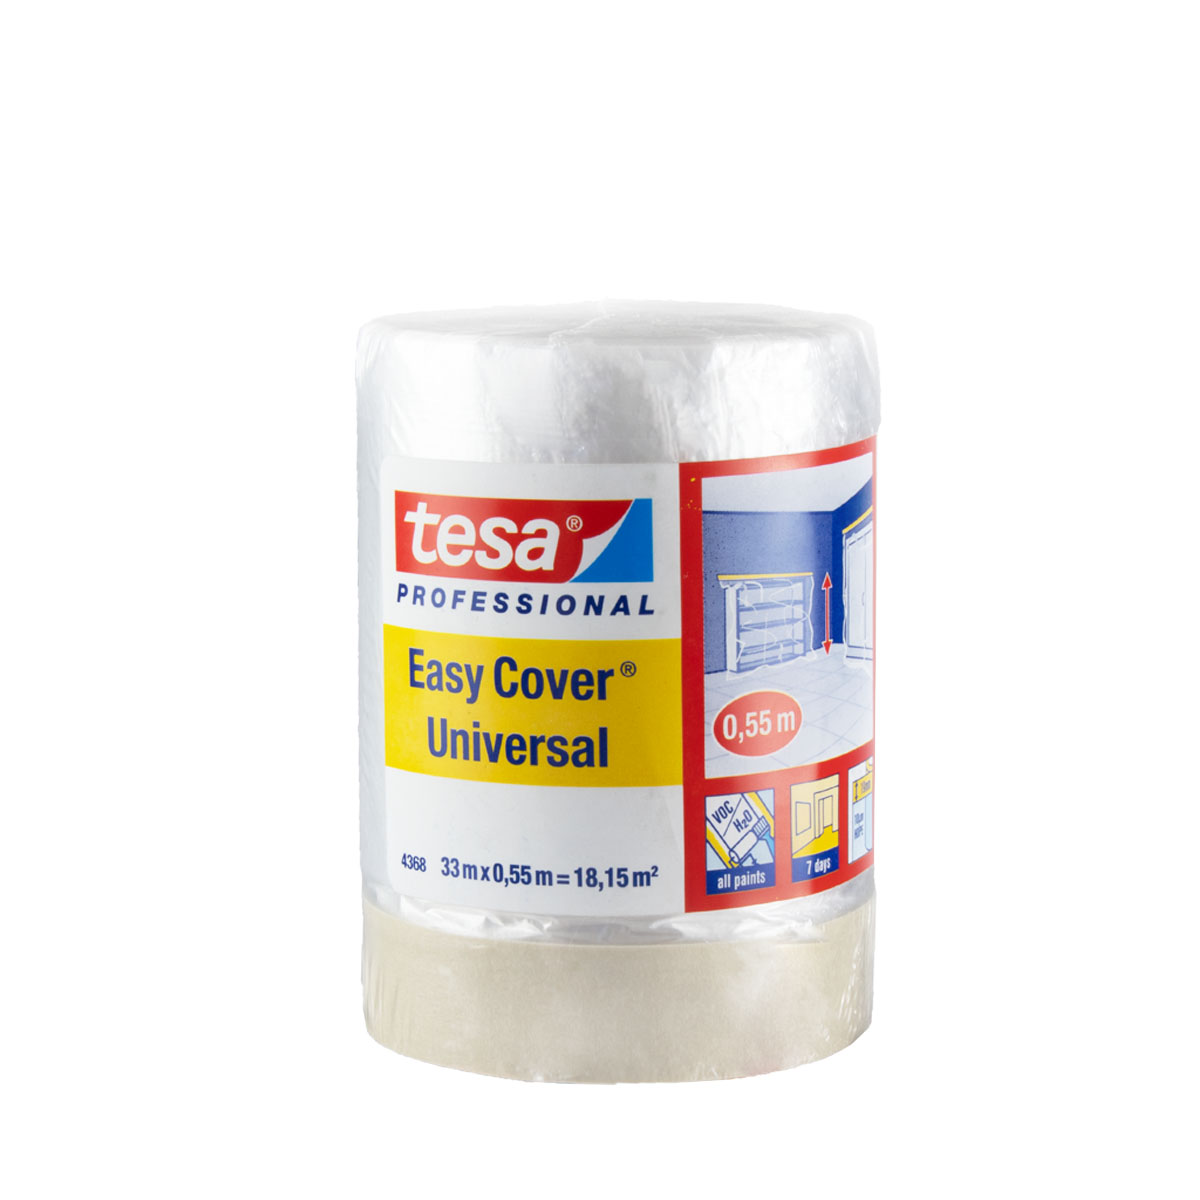 Tesa Easy Cover 4368 Universal 1800mm x 33m, Folienmasker, Abdeckfolie 2in1